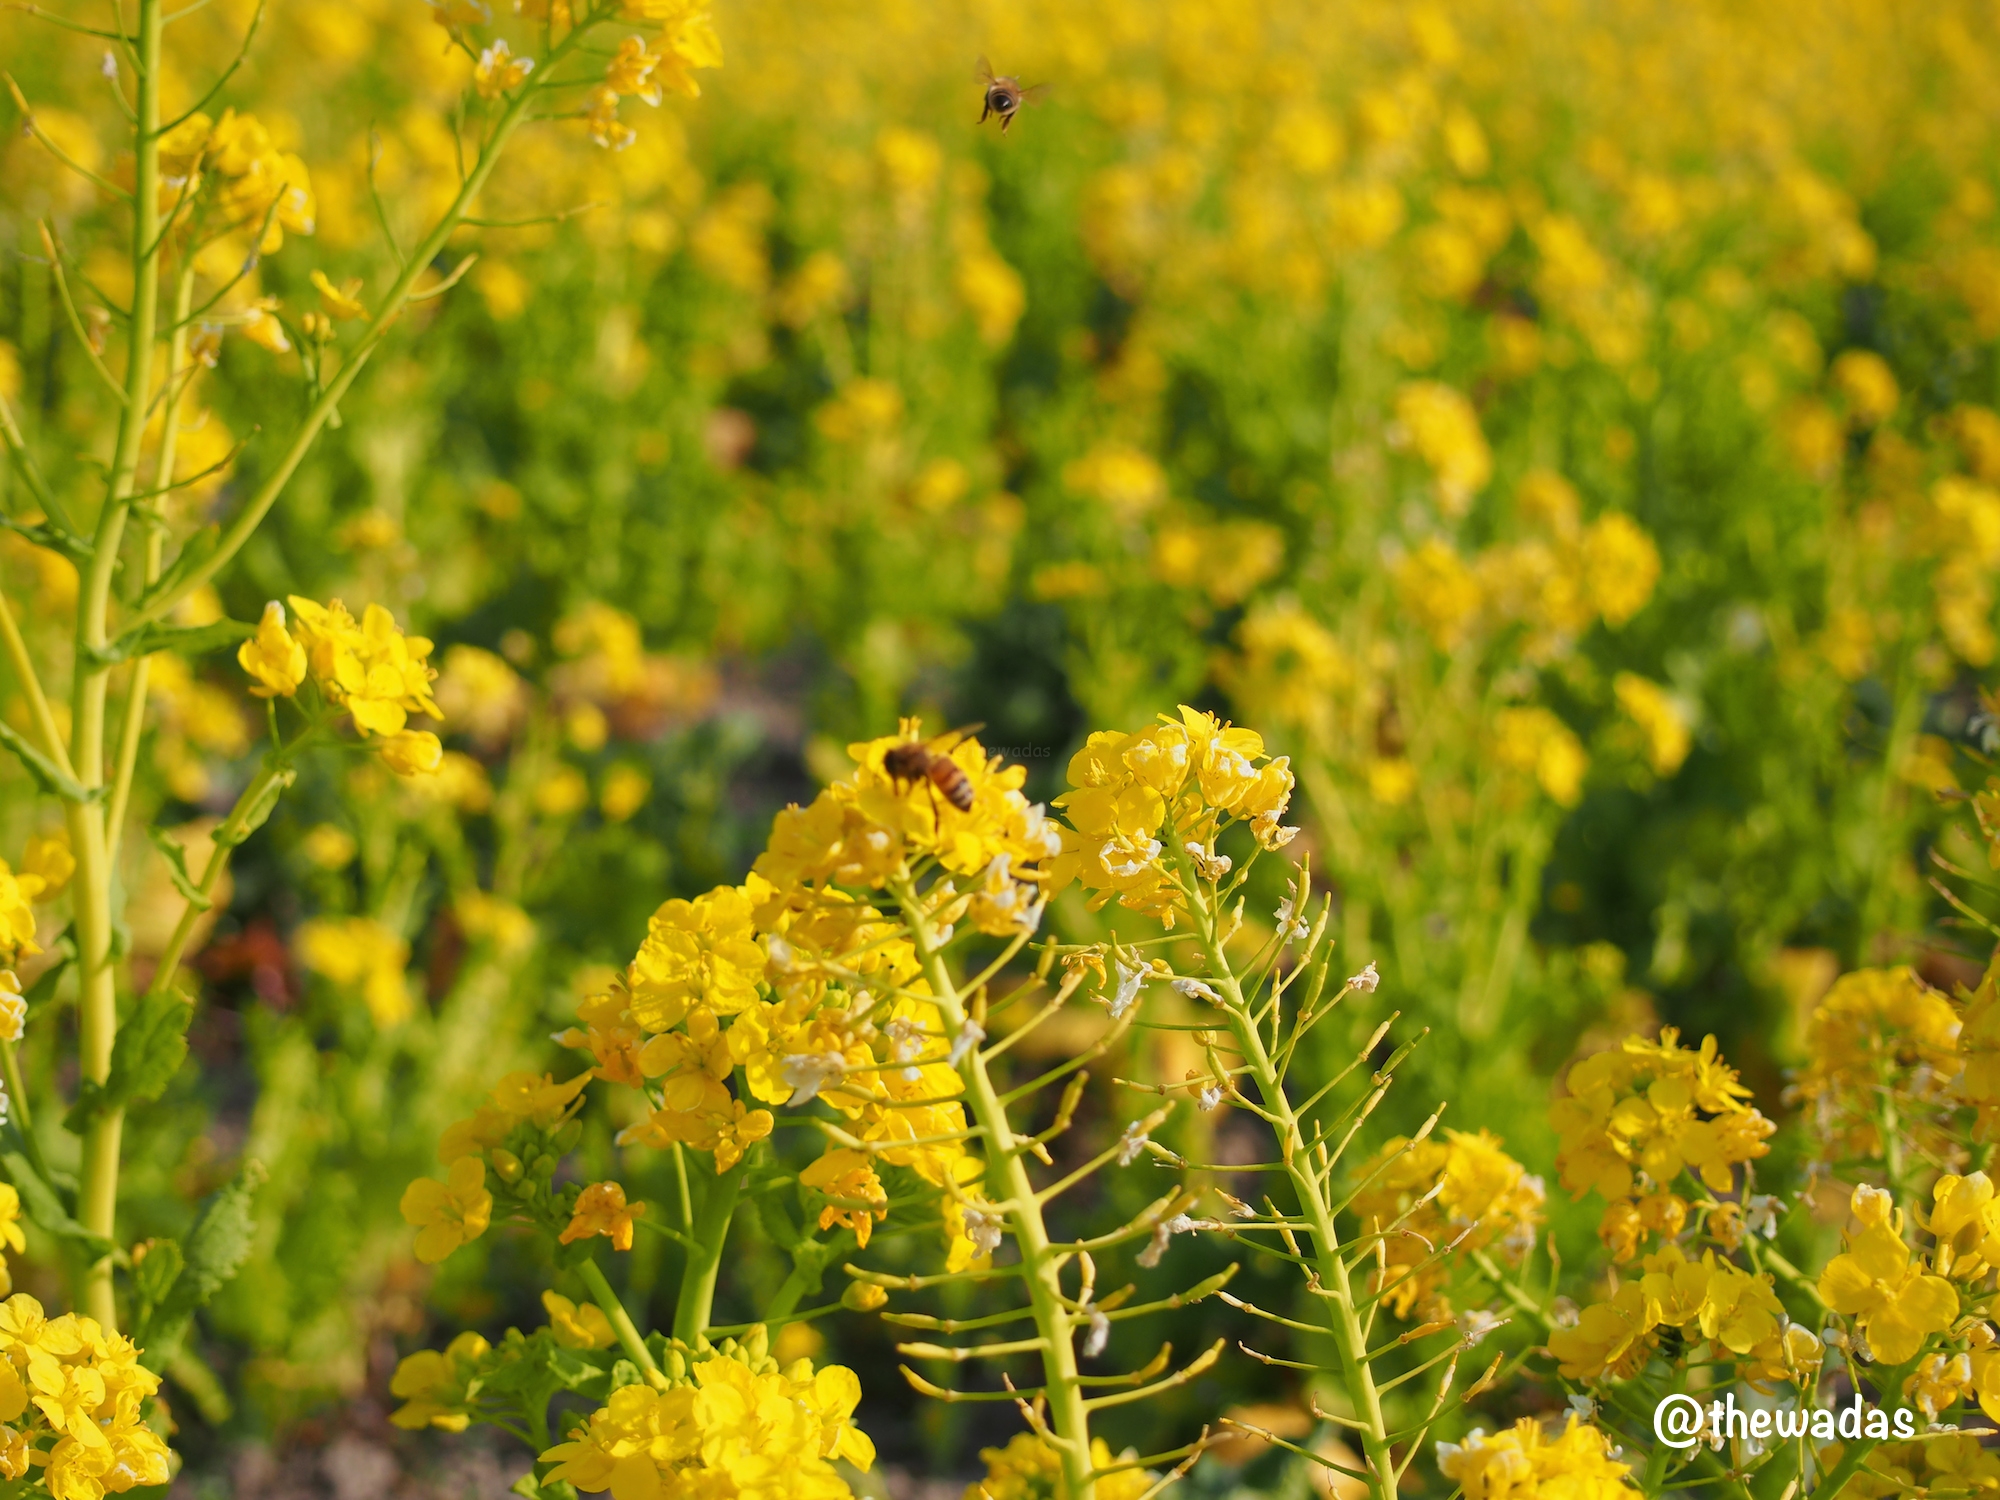 Kasaoka Bayfarm: Nanohana rapeseed flower field, closeup with bees